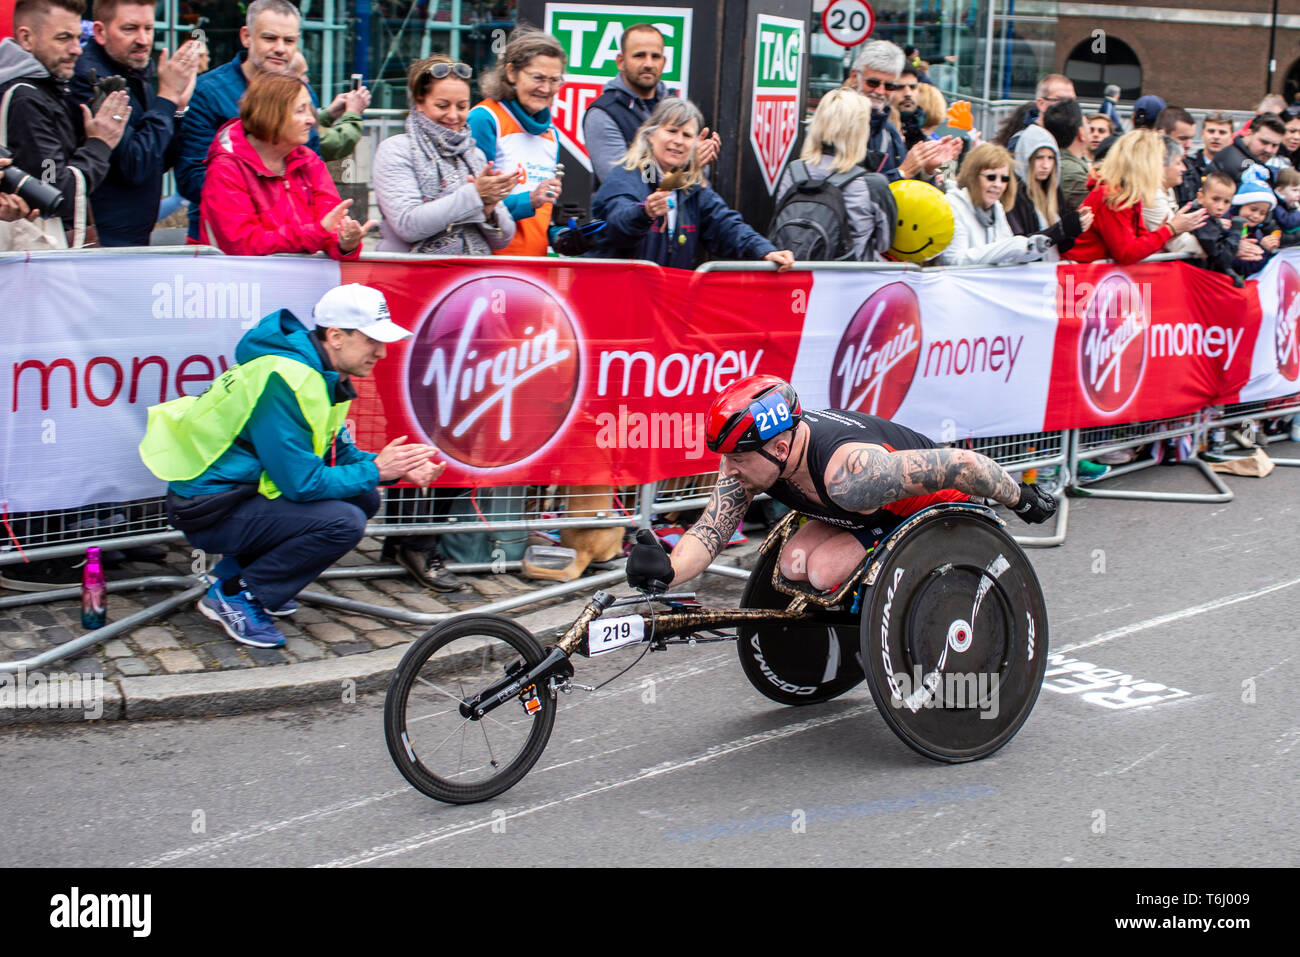 Anthony Gotts 219 racing dans la course en fauteuil roulant au Marathon de Londres 2019 Virgin Money, UK. L'appui du prévôt et de foule. L'appui du public Banque D'Images